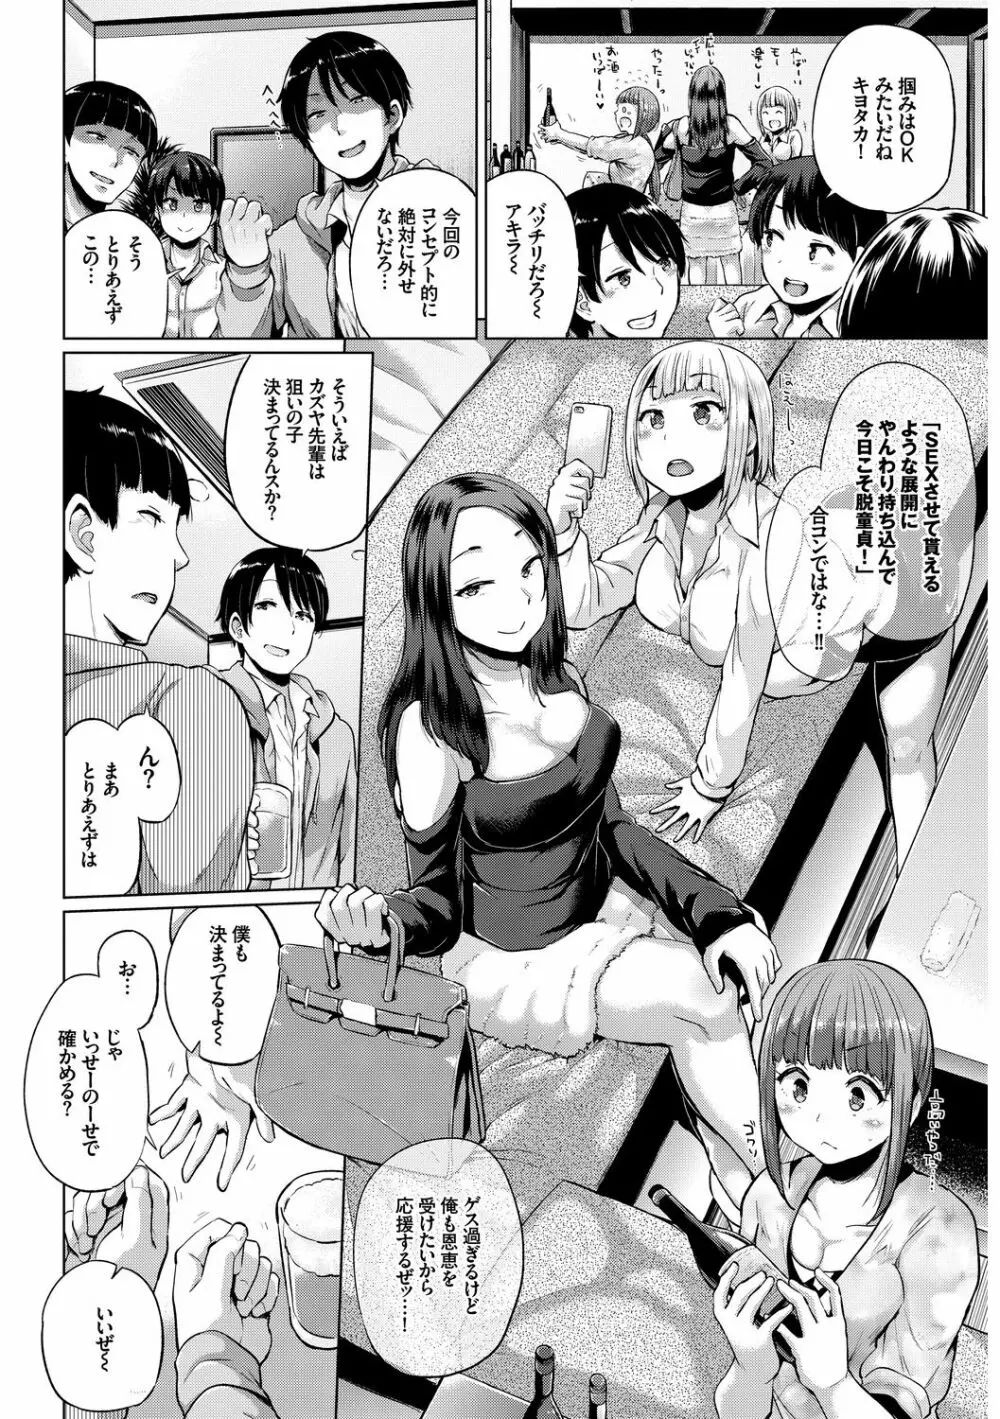 SEX中毒ッ!マジヤバ超絶ビッチ! Vol.7 92ページ